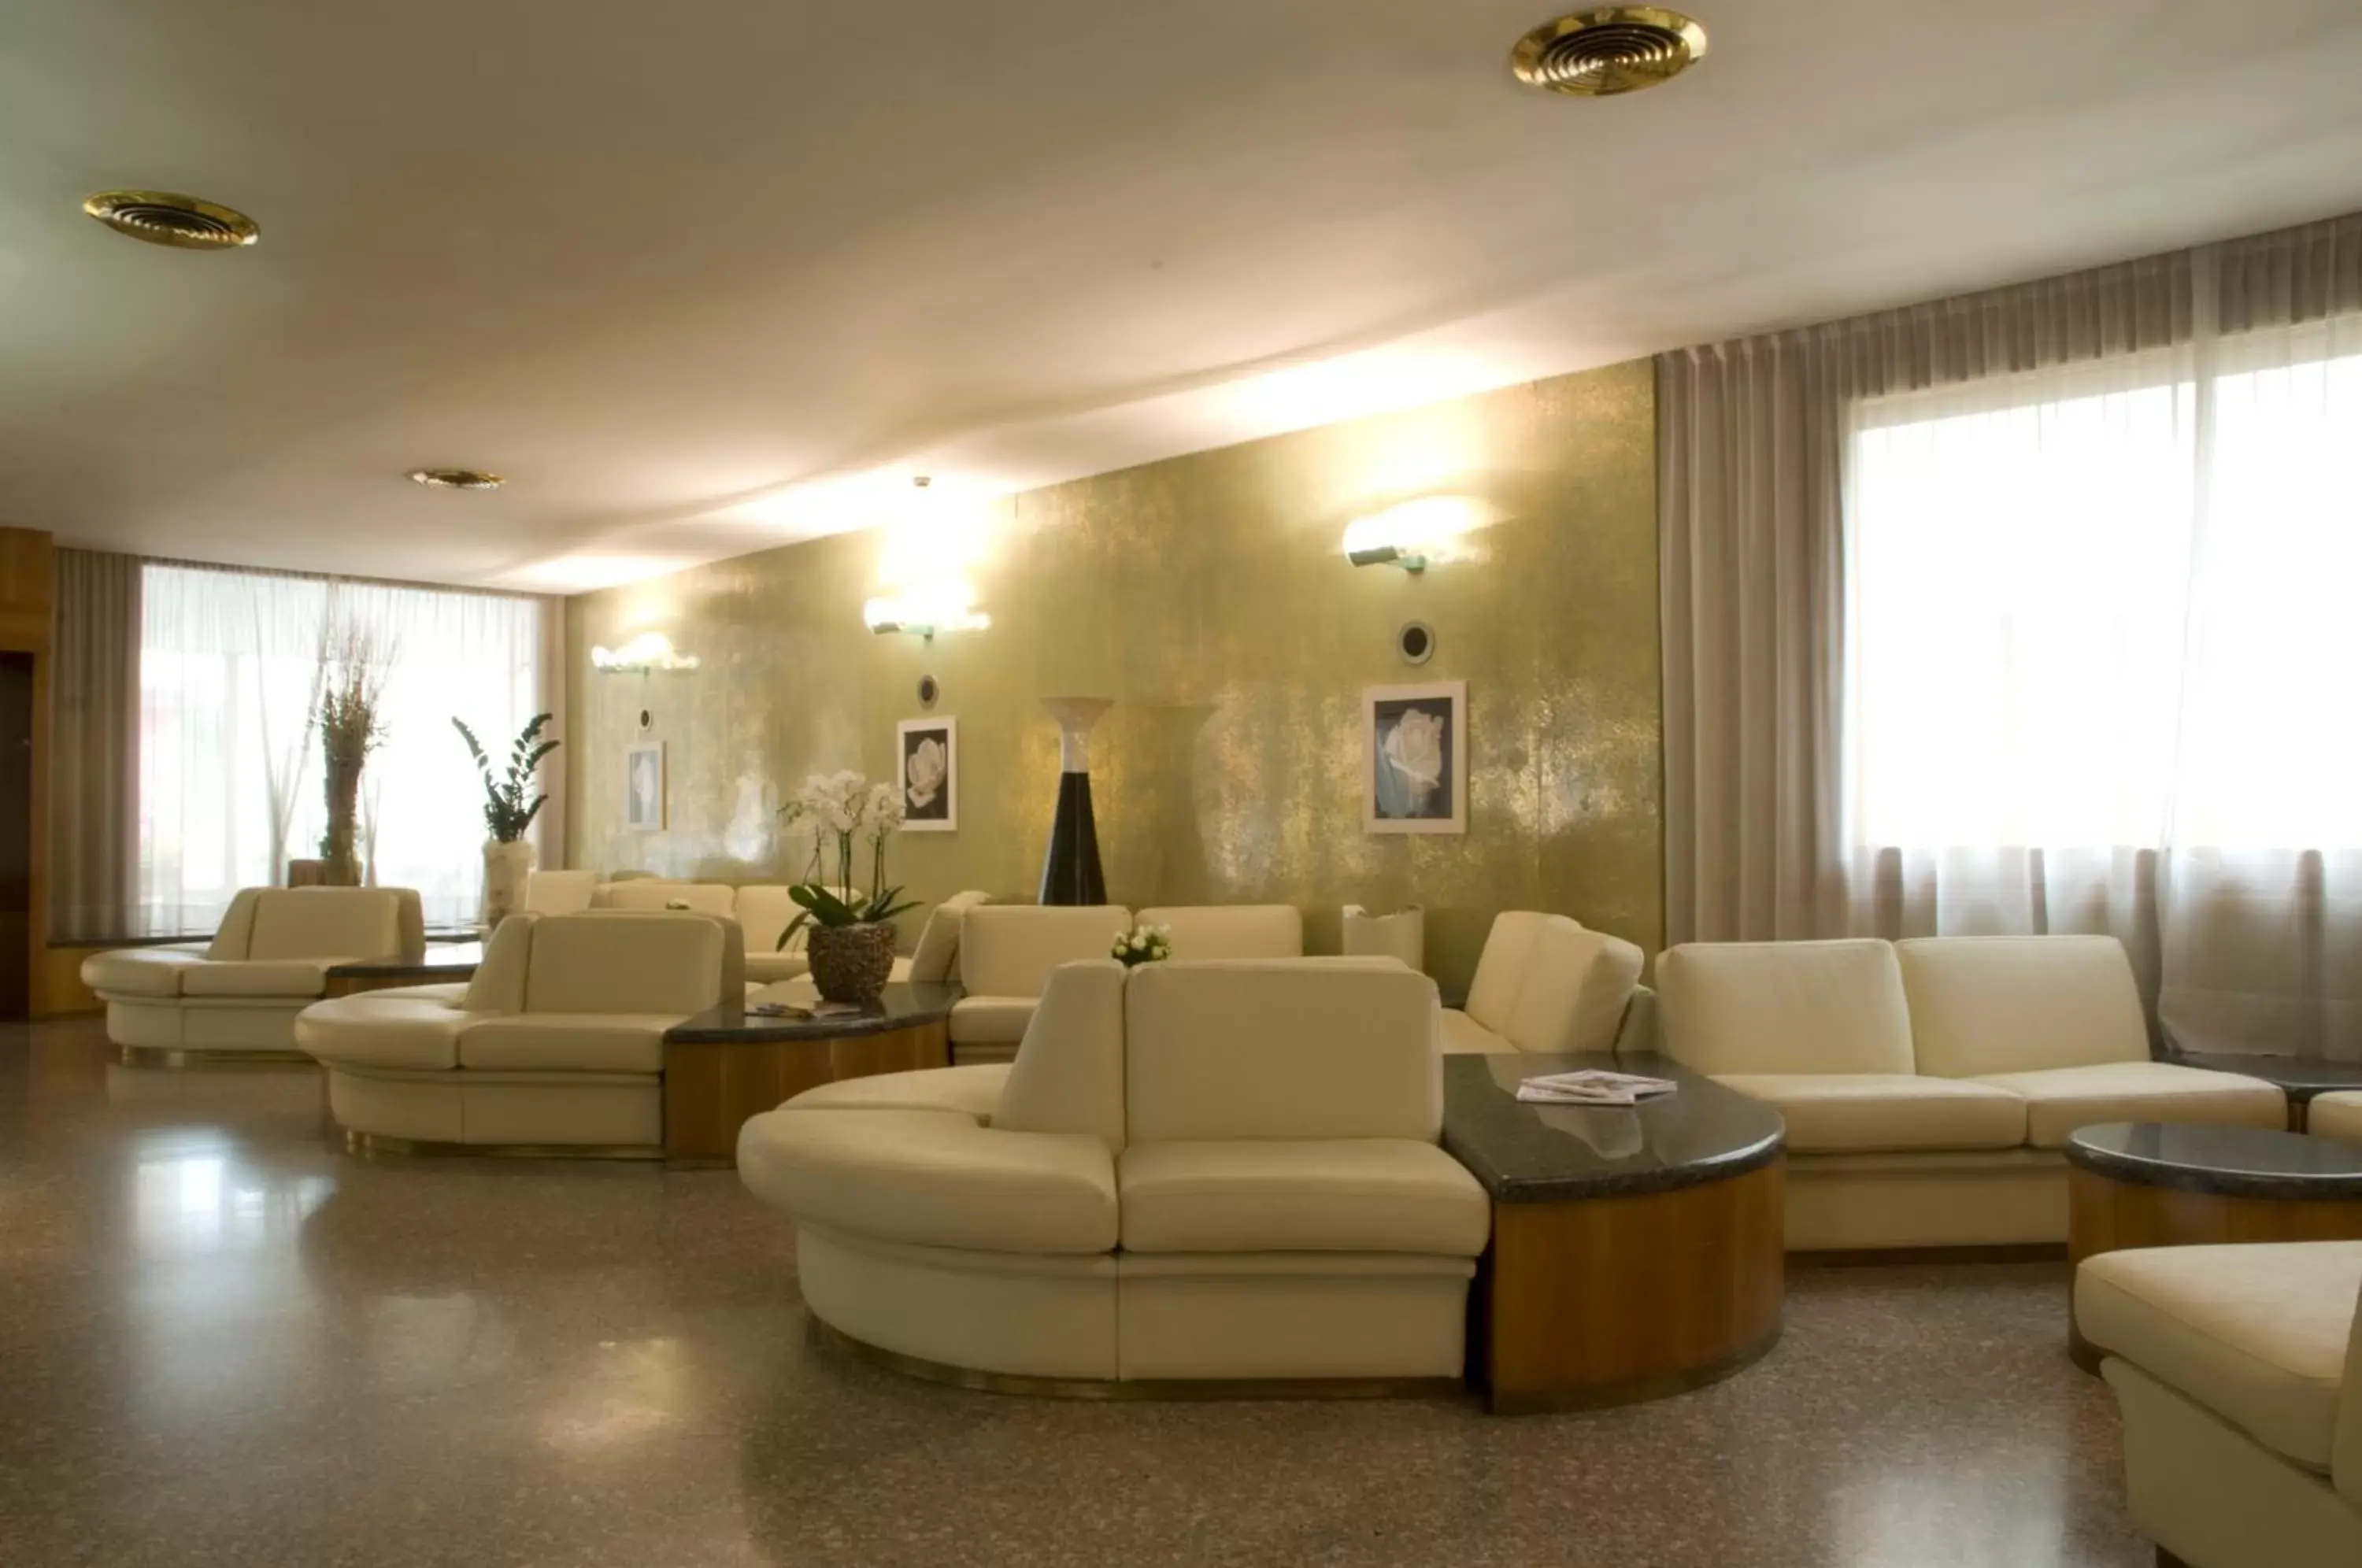 Lobby or reception, Lobby/Reception in Albergo Milano